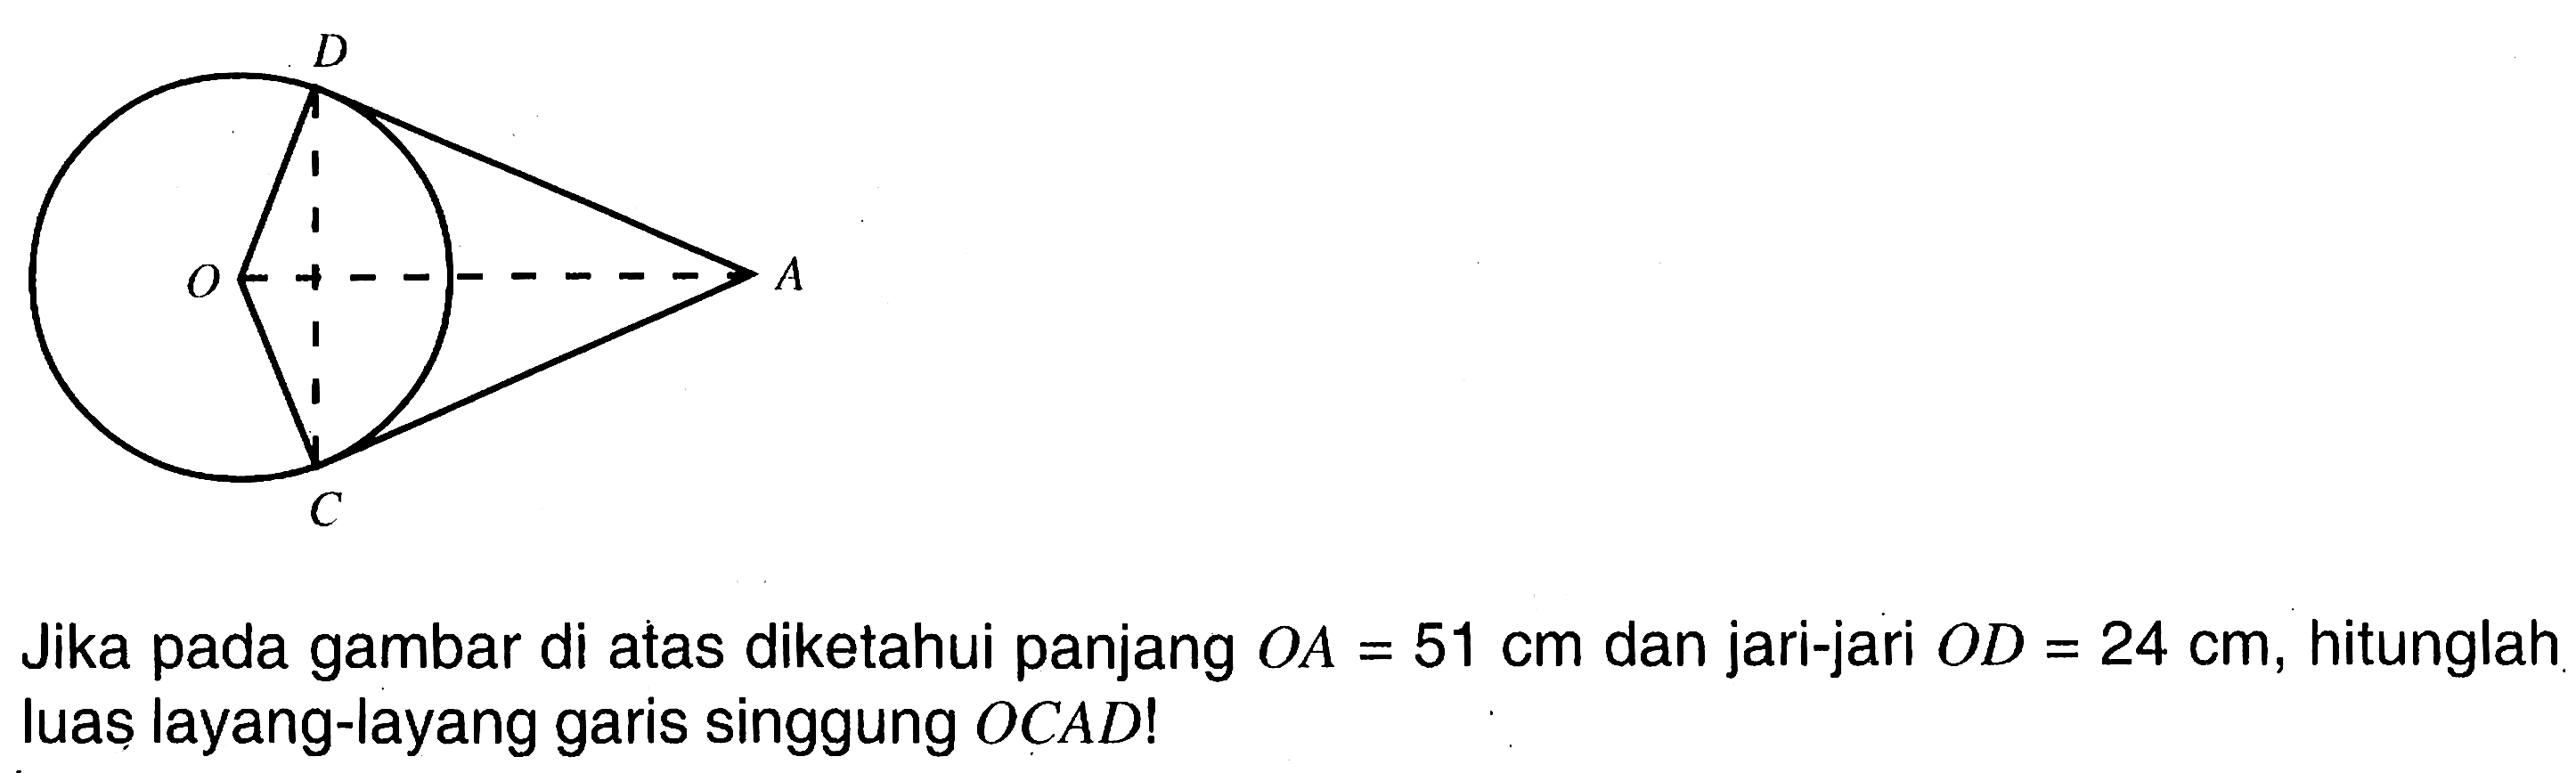 Jika pada gambar di atas diketahui panjang OA=51 cm dan jari-jari OD=24 cm, hitunglah luas layang-layang garis singgung OCAD!